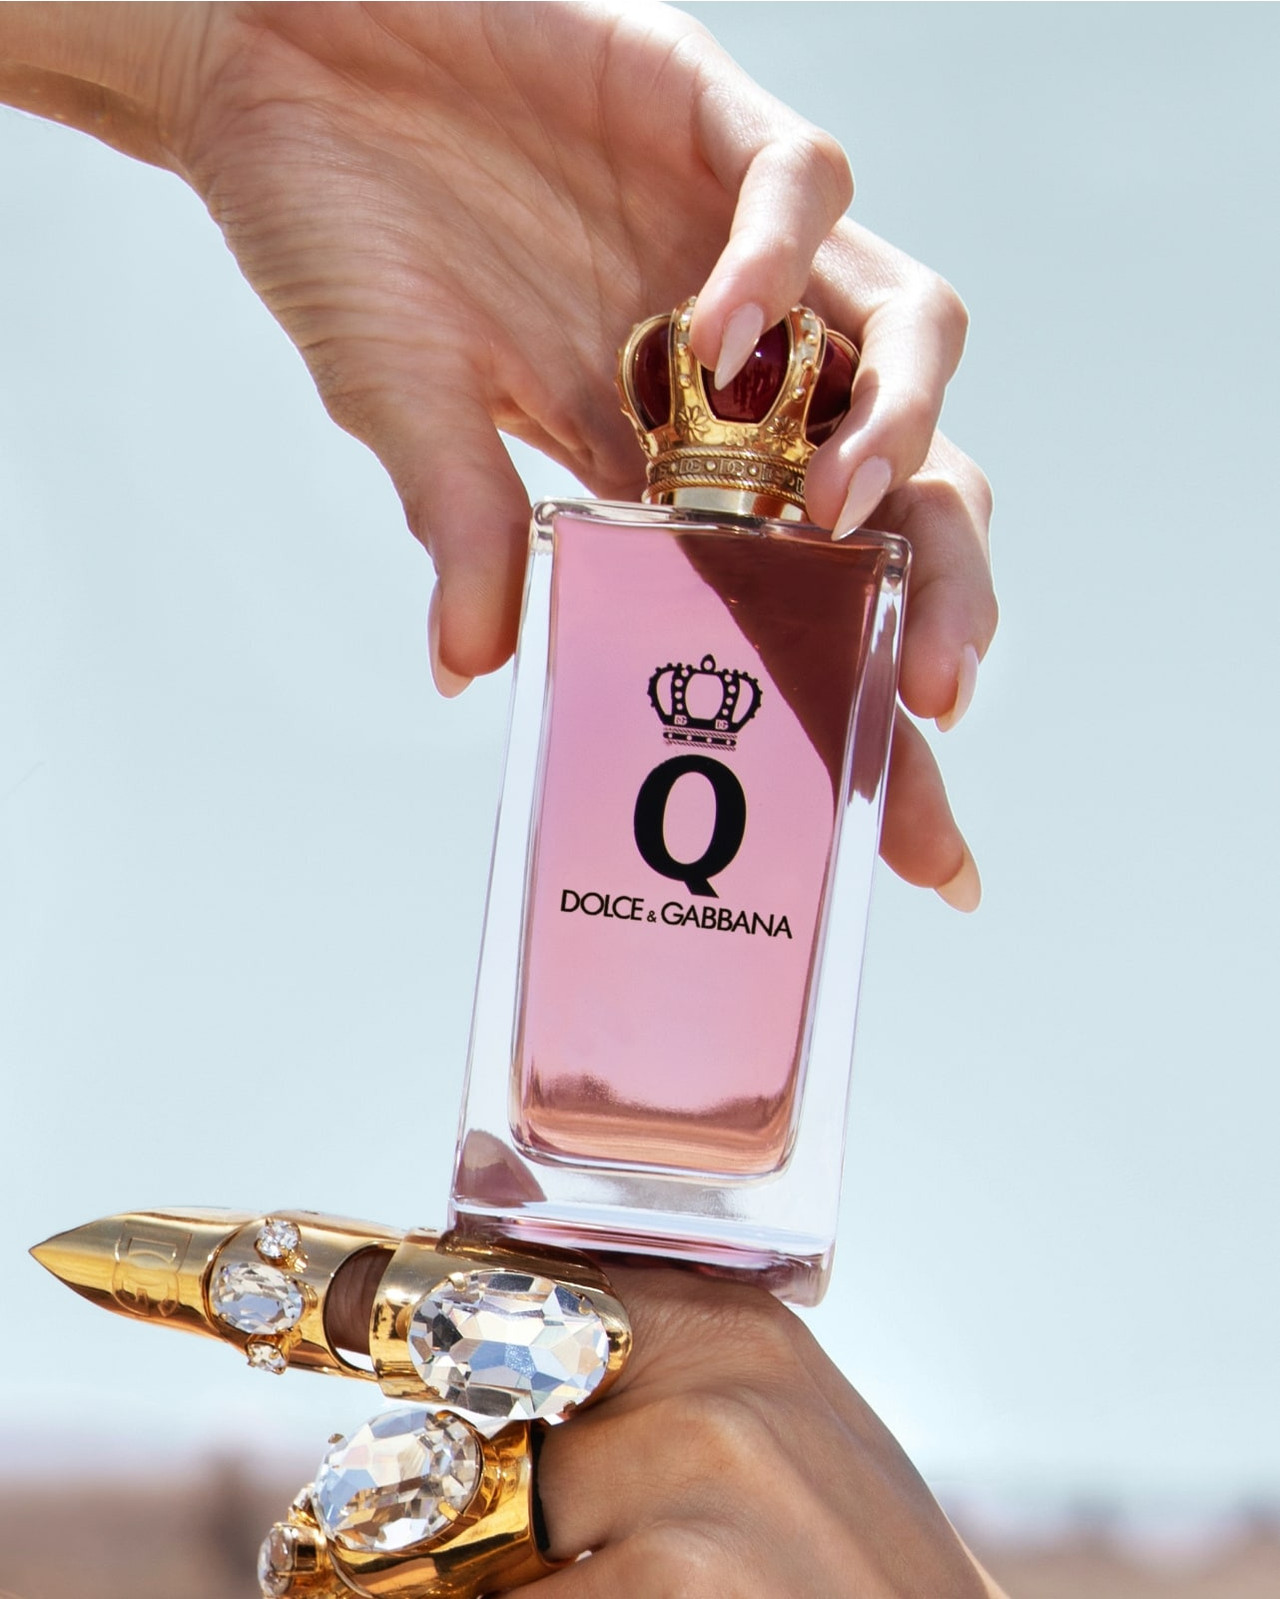 The new Eau de Parfum for Women. Exclusively online. - Dolce Gabbana